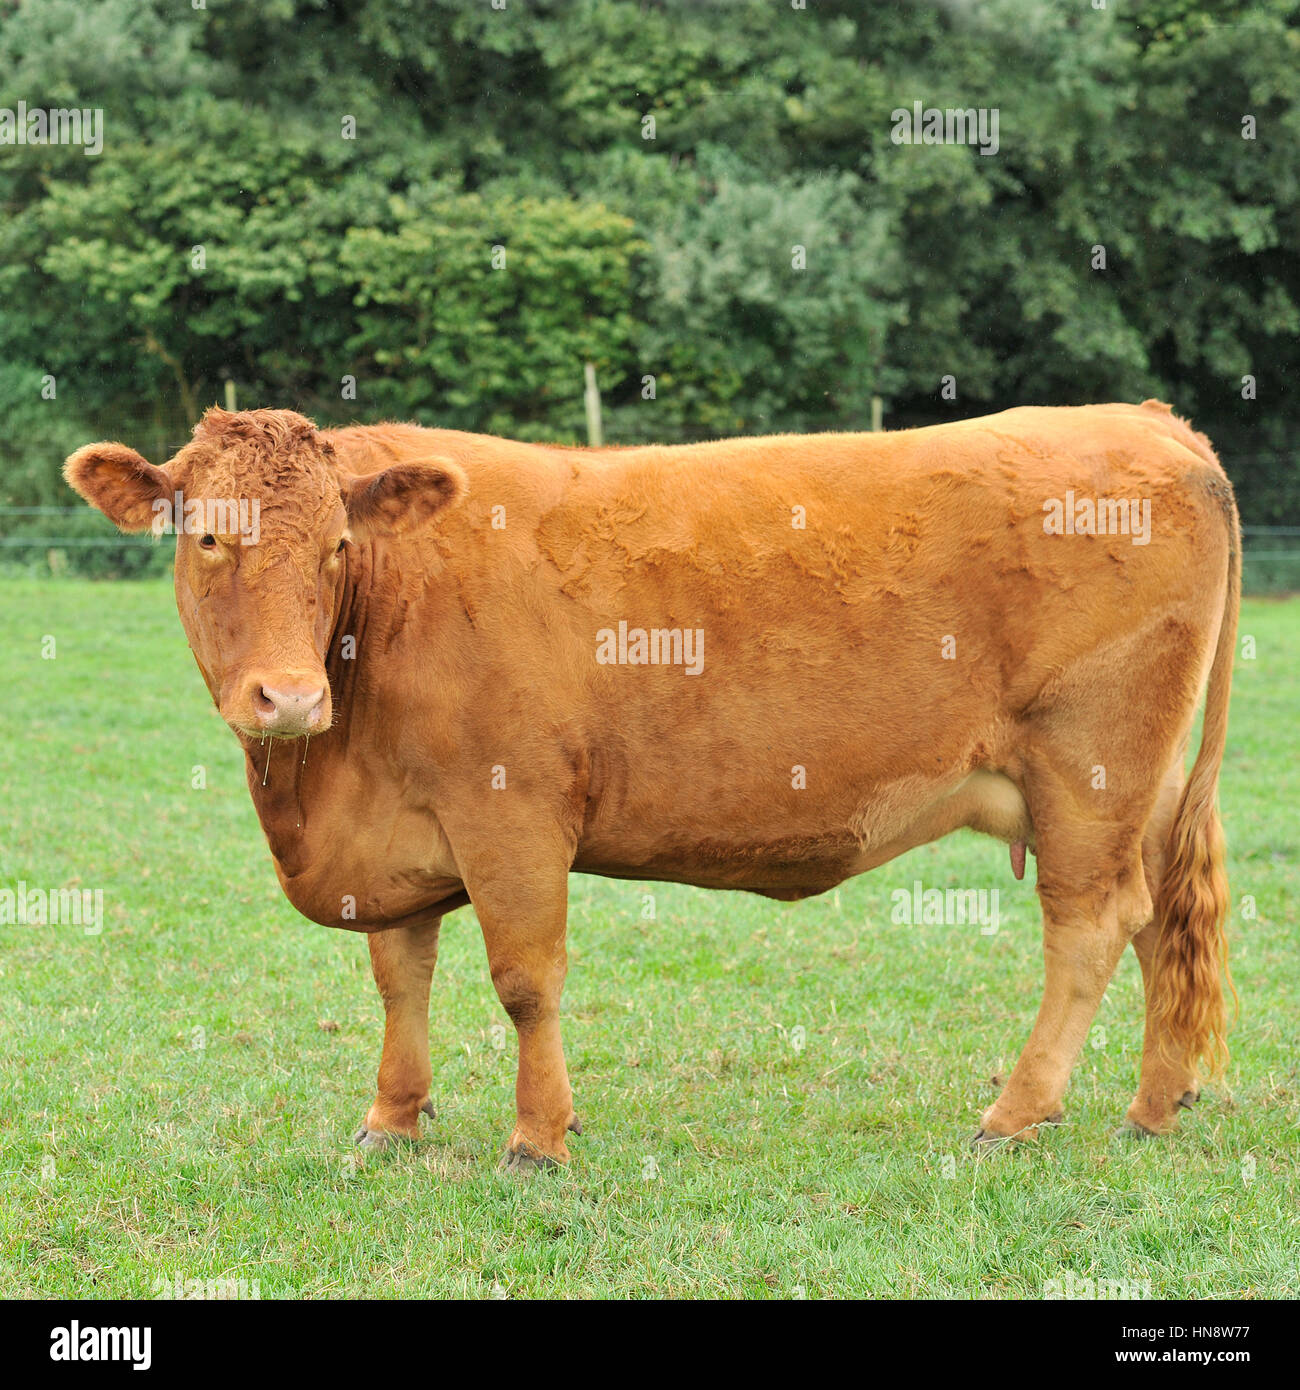 pedigree south devon suckler cow Stock Photo